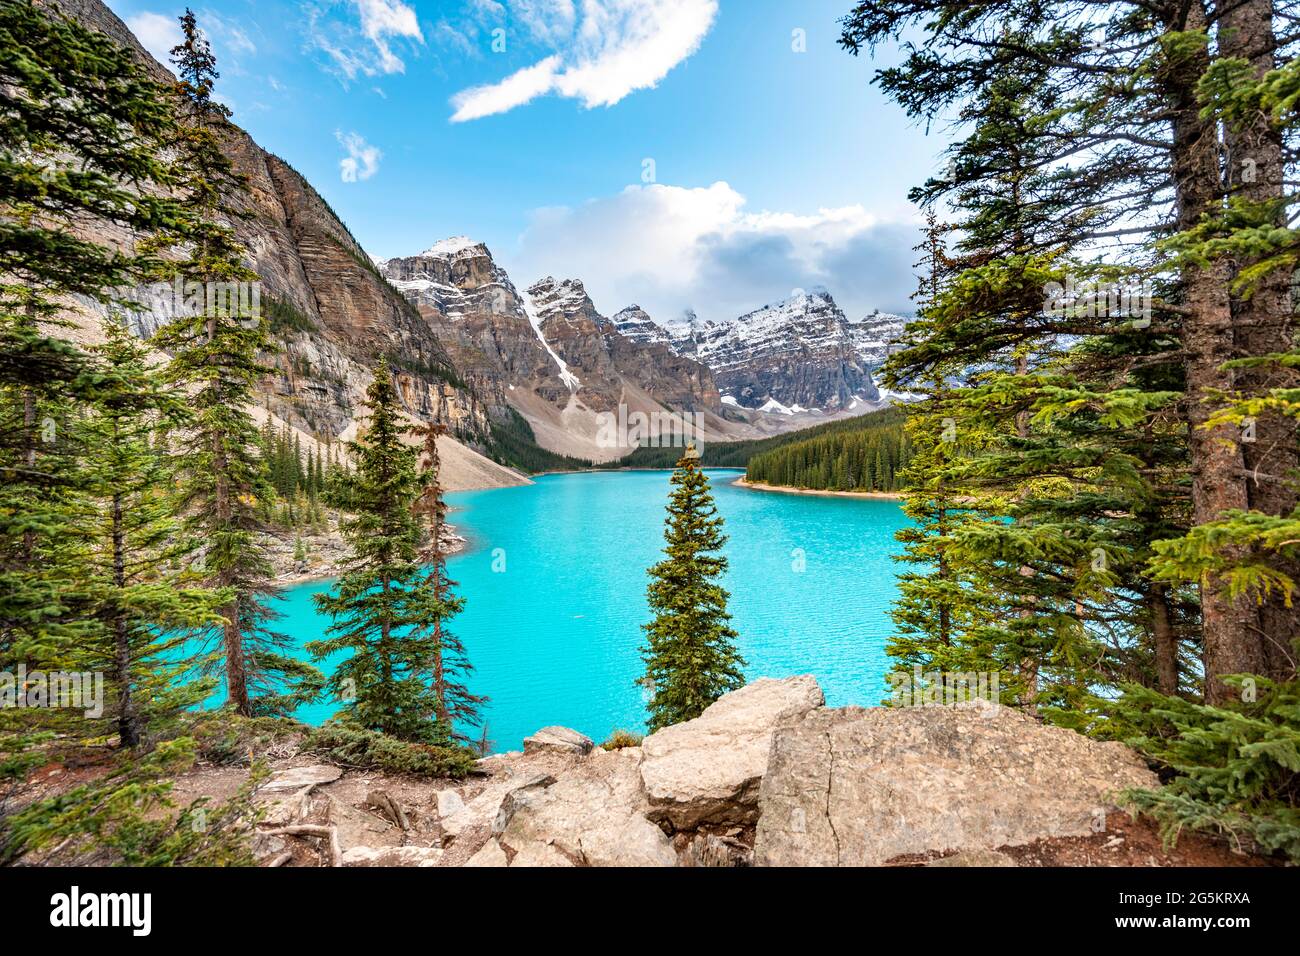 Aire de répartition des montagnes derrière le lac glaciaire turquoise, lac Moraine, vallée des dix pics, montagnes Rocheuses, parc national Banff, Alberta province, Canada, N Banque D'Images